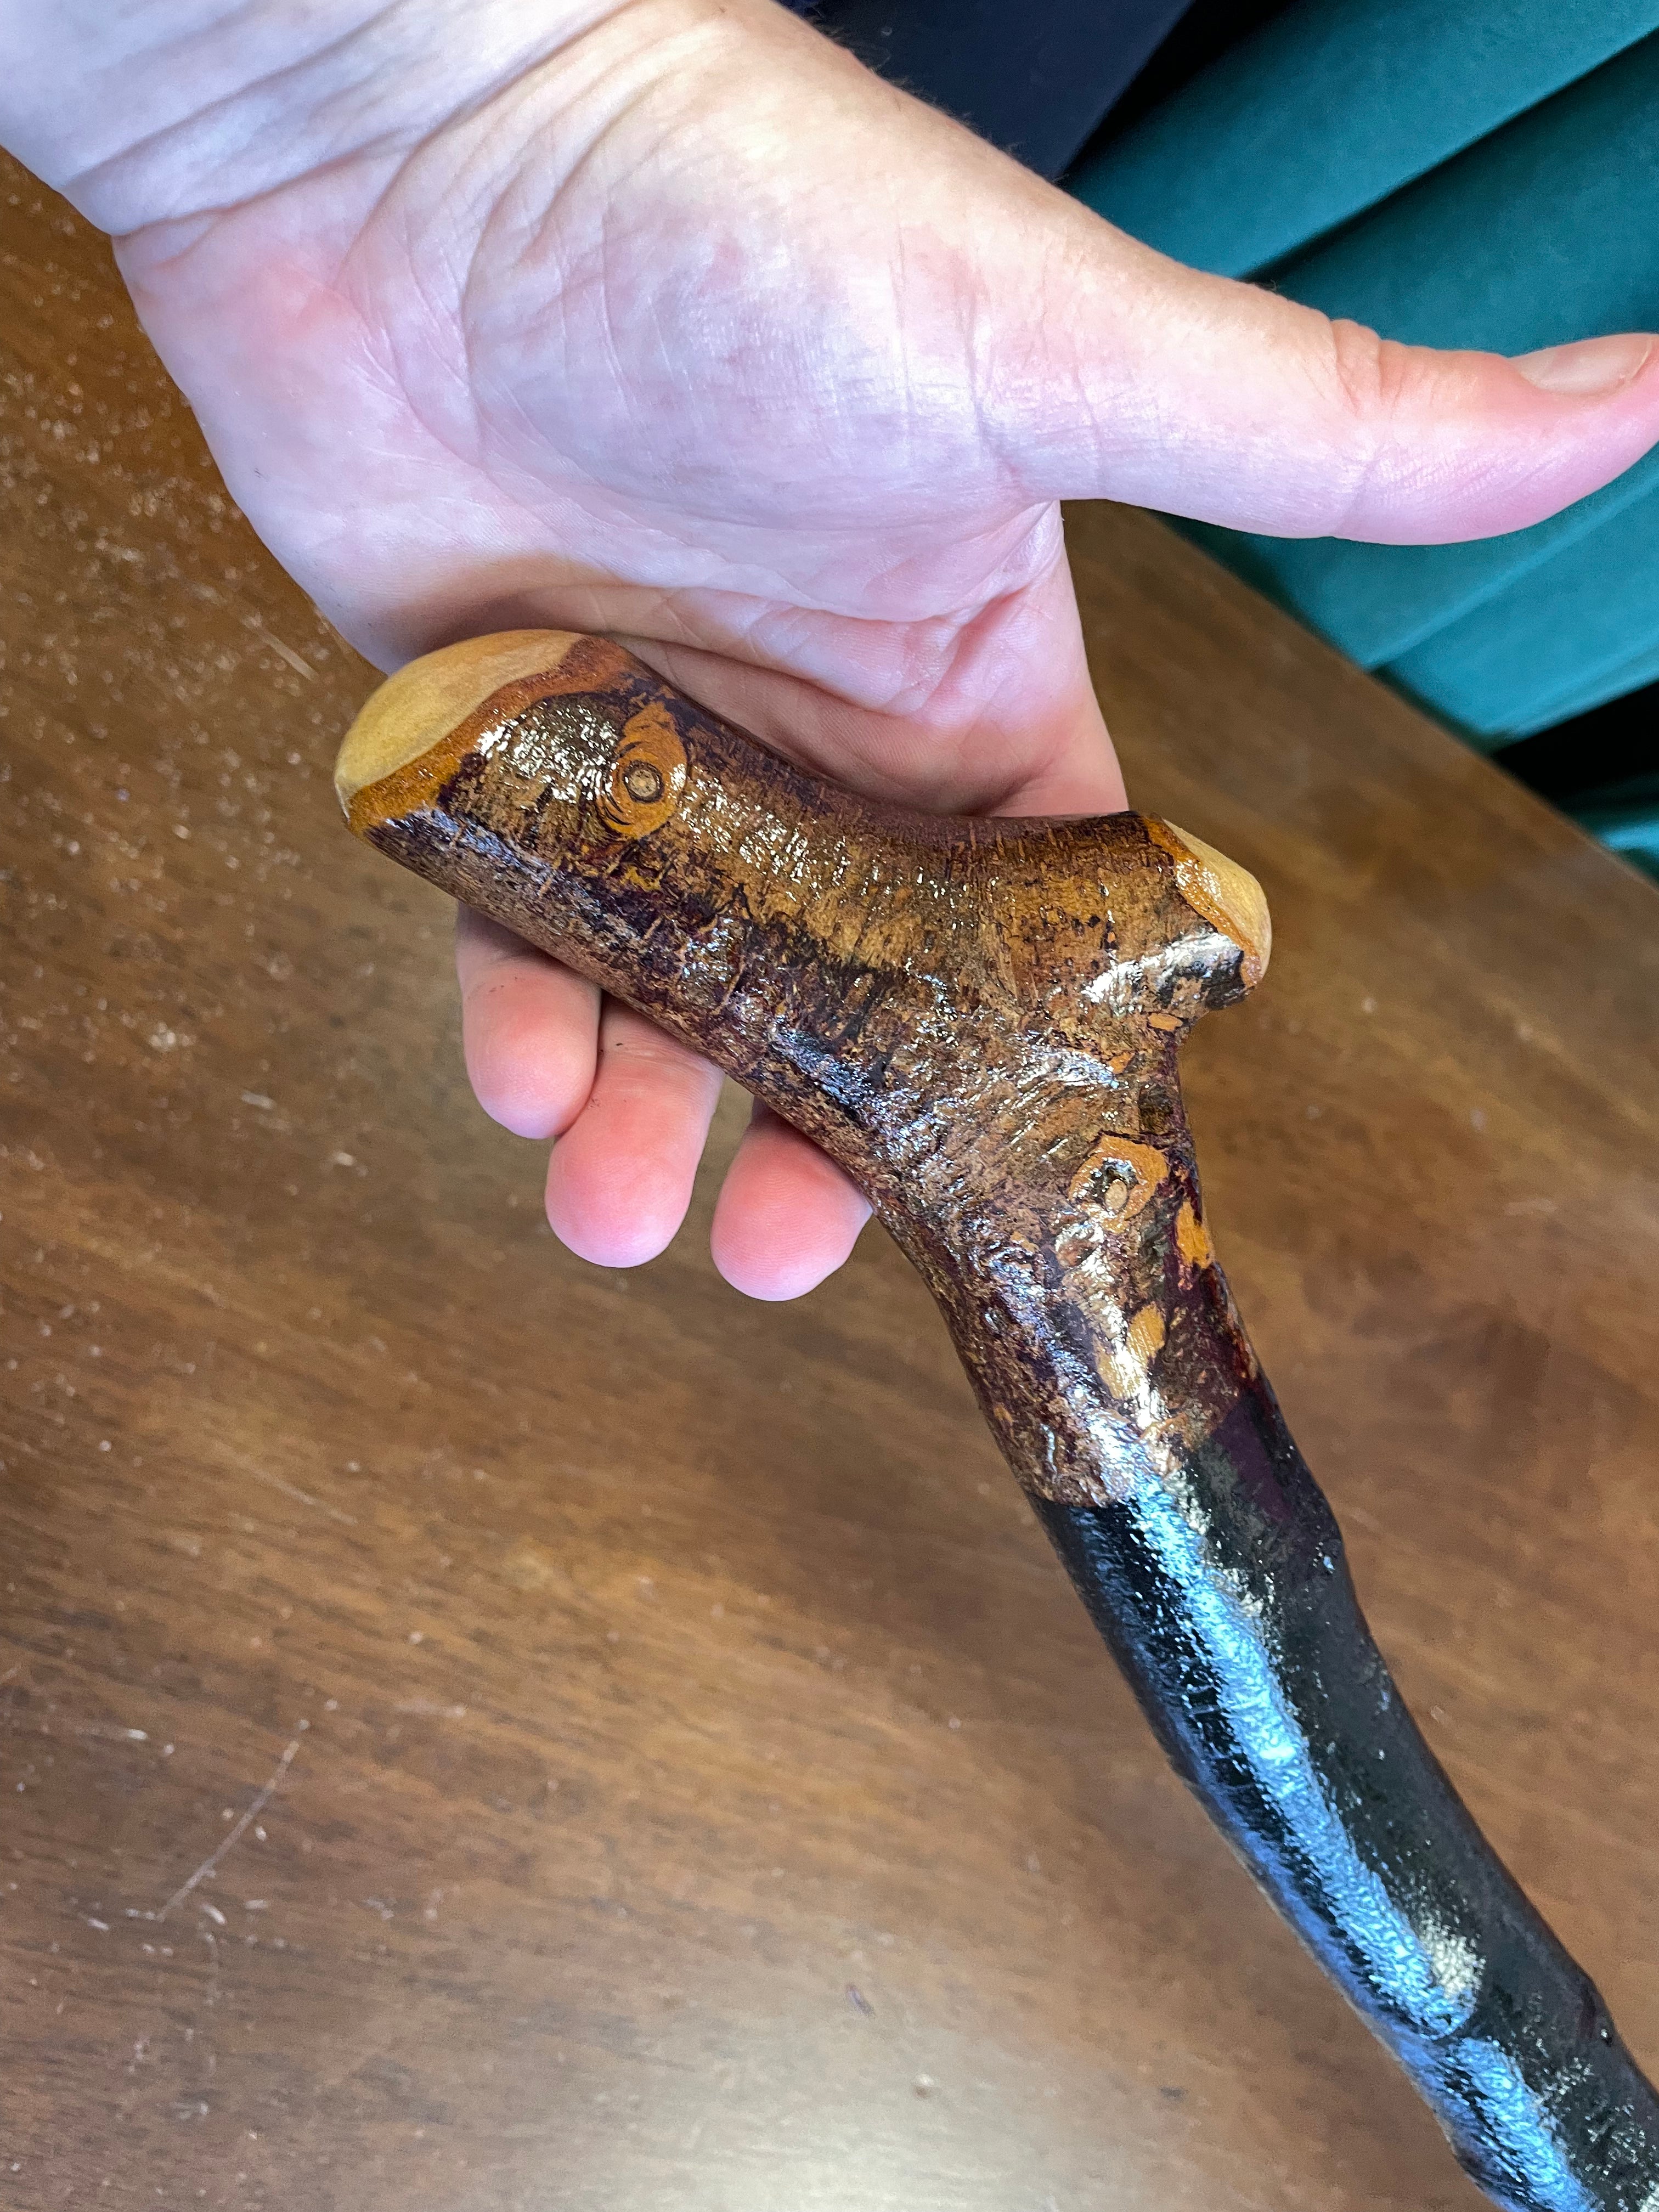 Blackthorn Walking Stick 36 inch - Handmade in Ireland – McCaffrey Crafts  Ltd